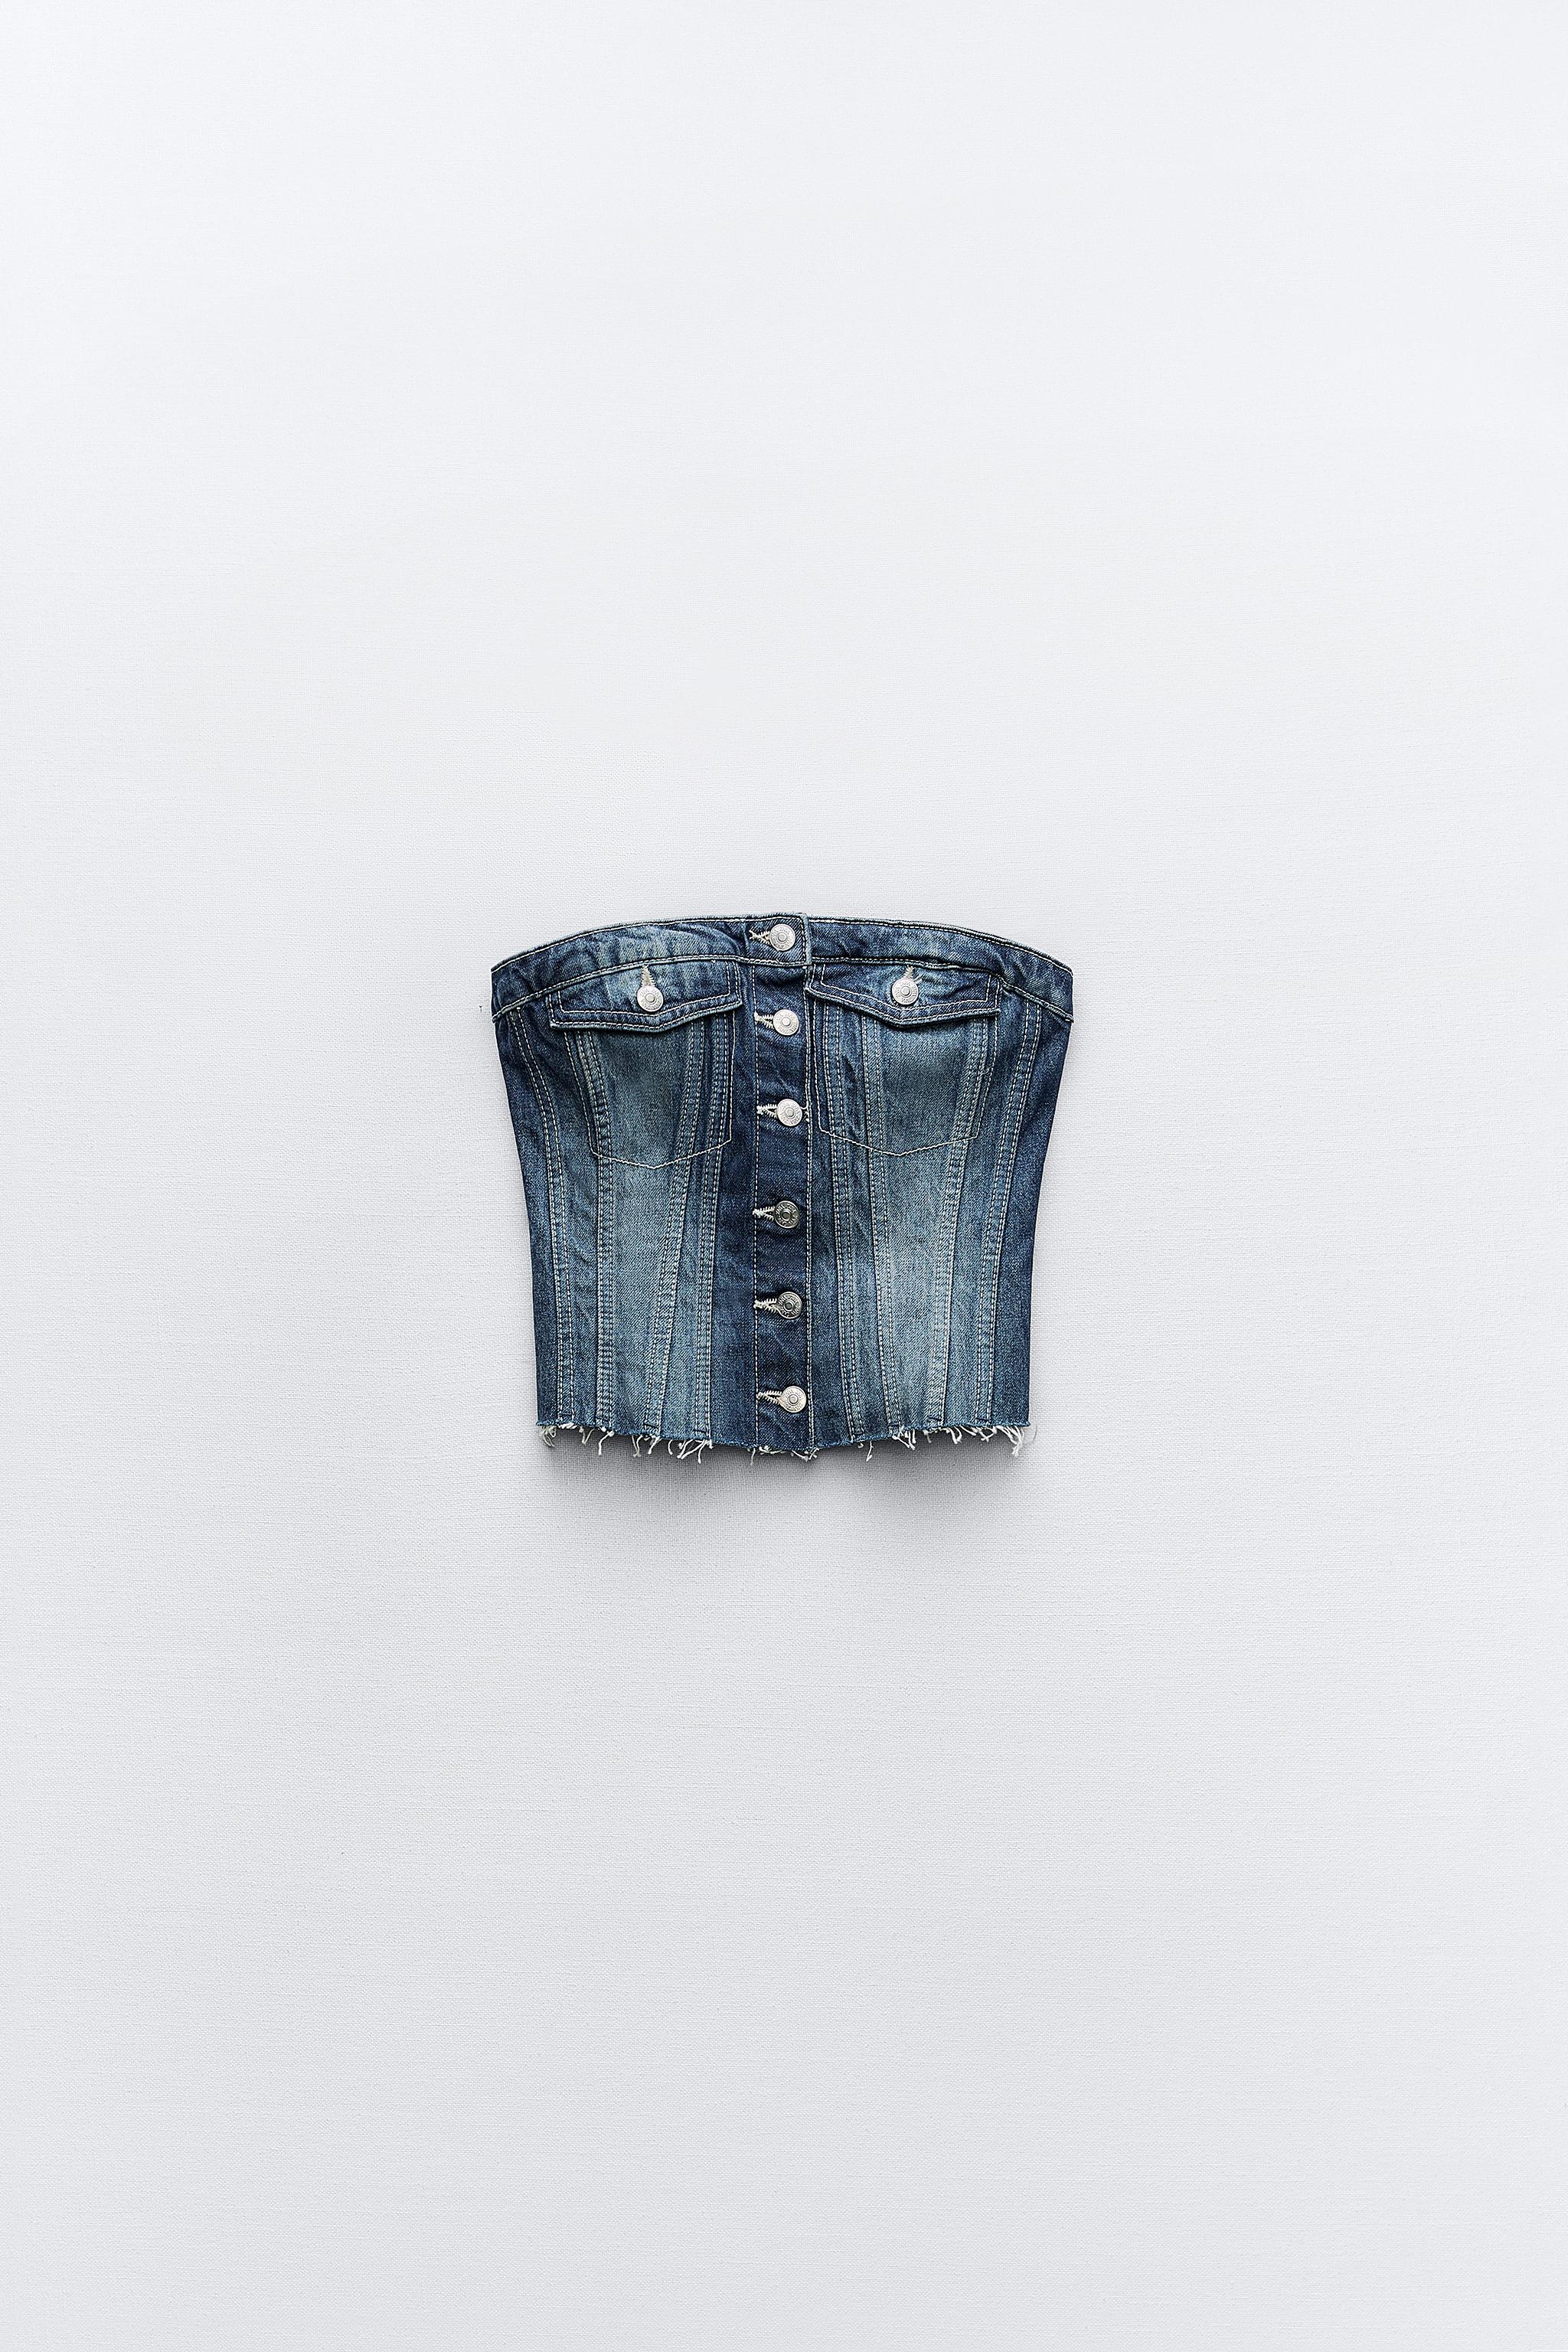 Zara Corset Blue Denim Belt 0594/033/400 Size 32